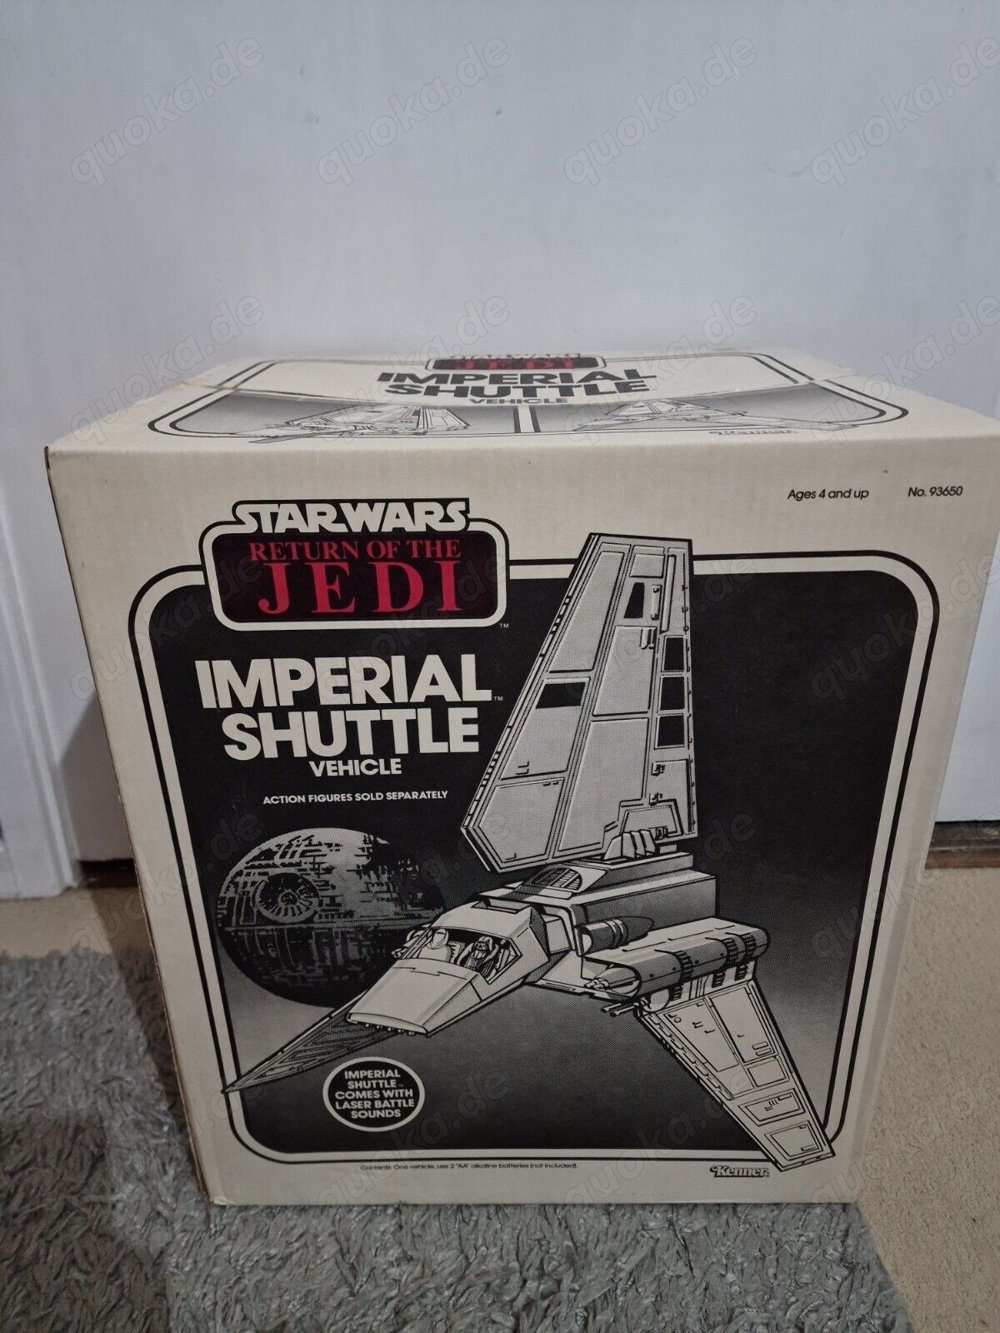 Vintage Star Wars Imperial Shuttle verpackt (mit unbenutztem Inhalt)